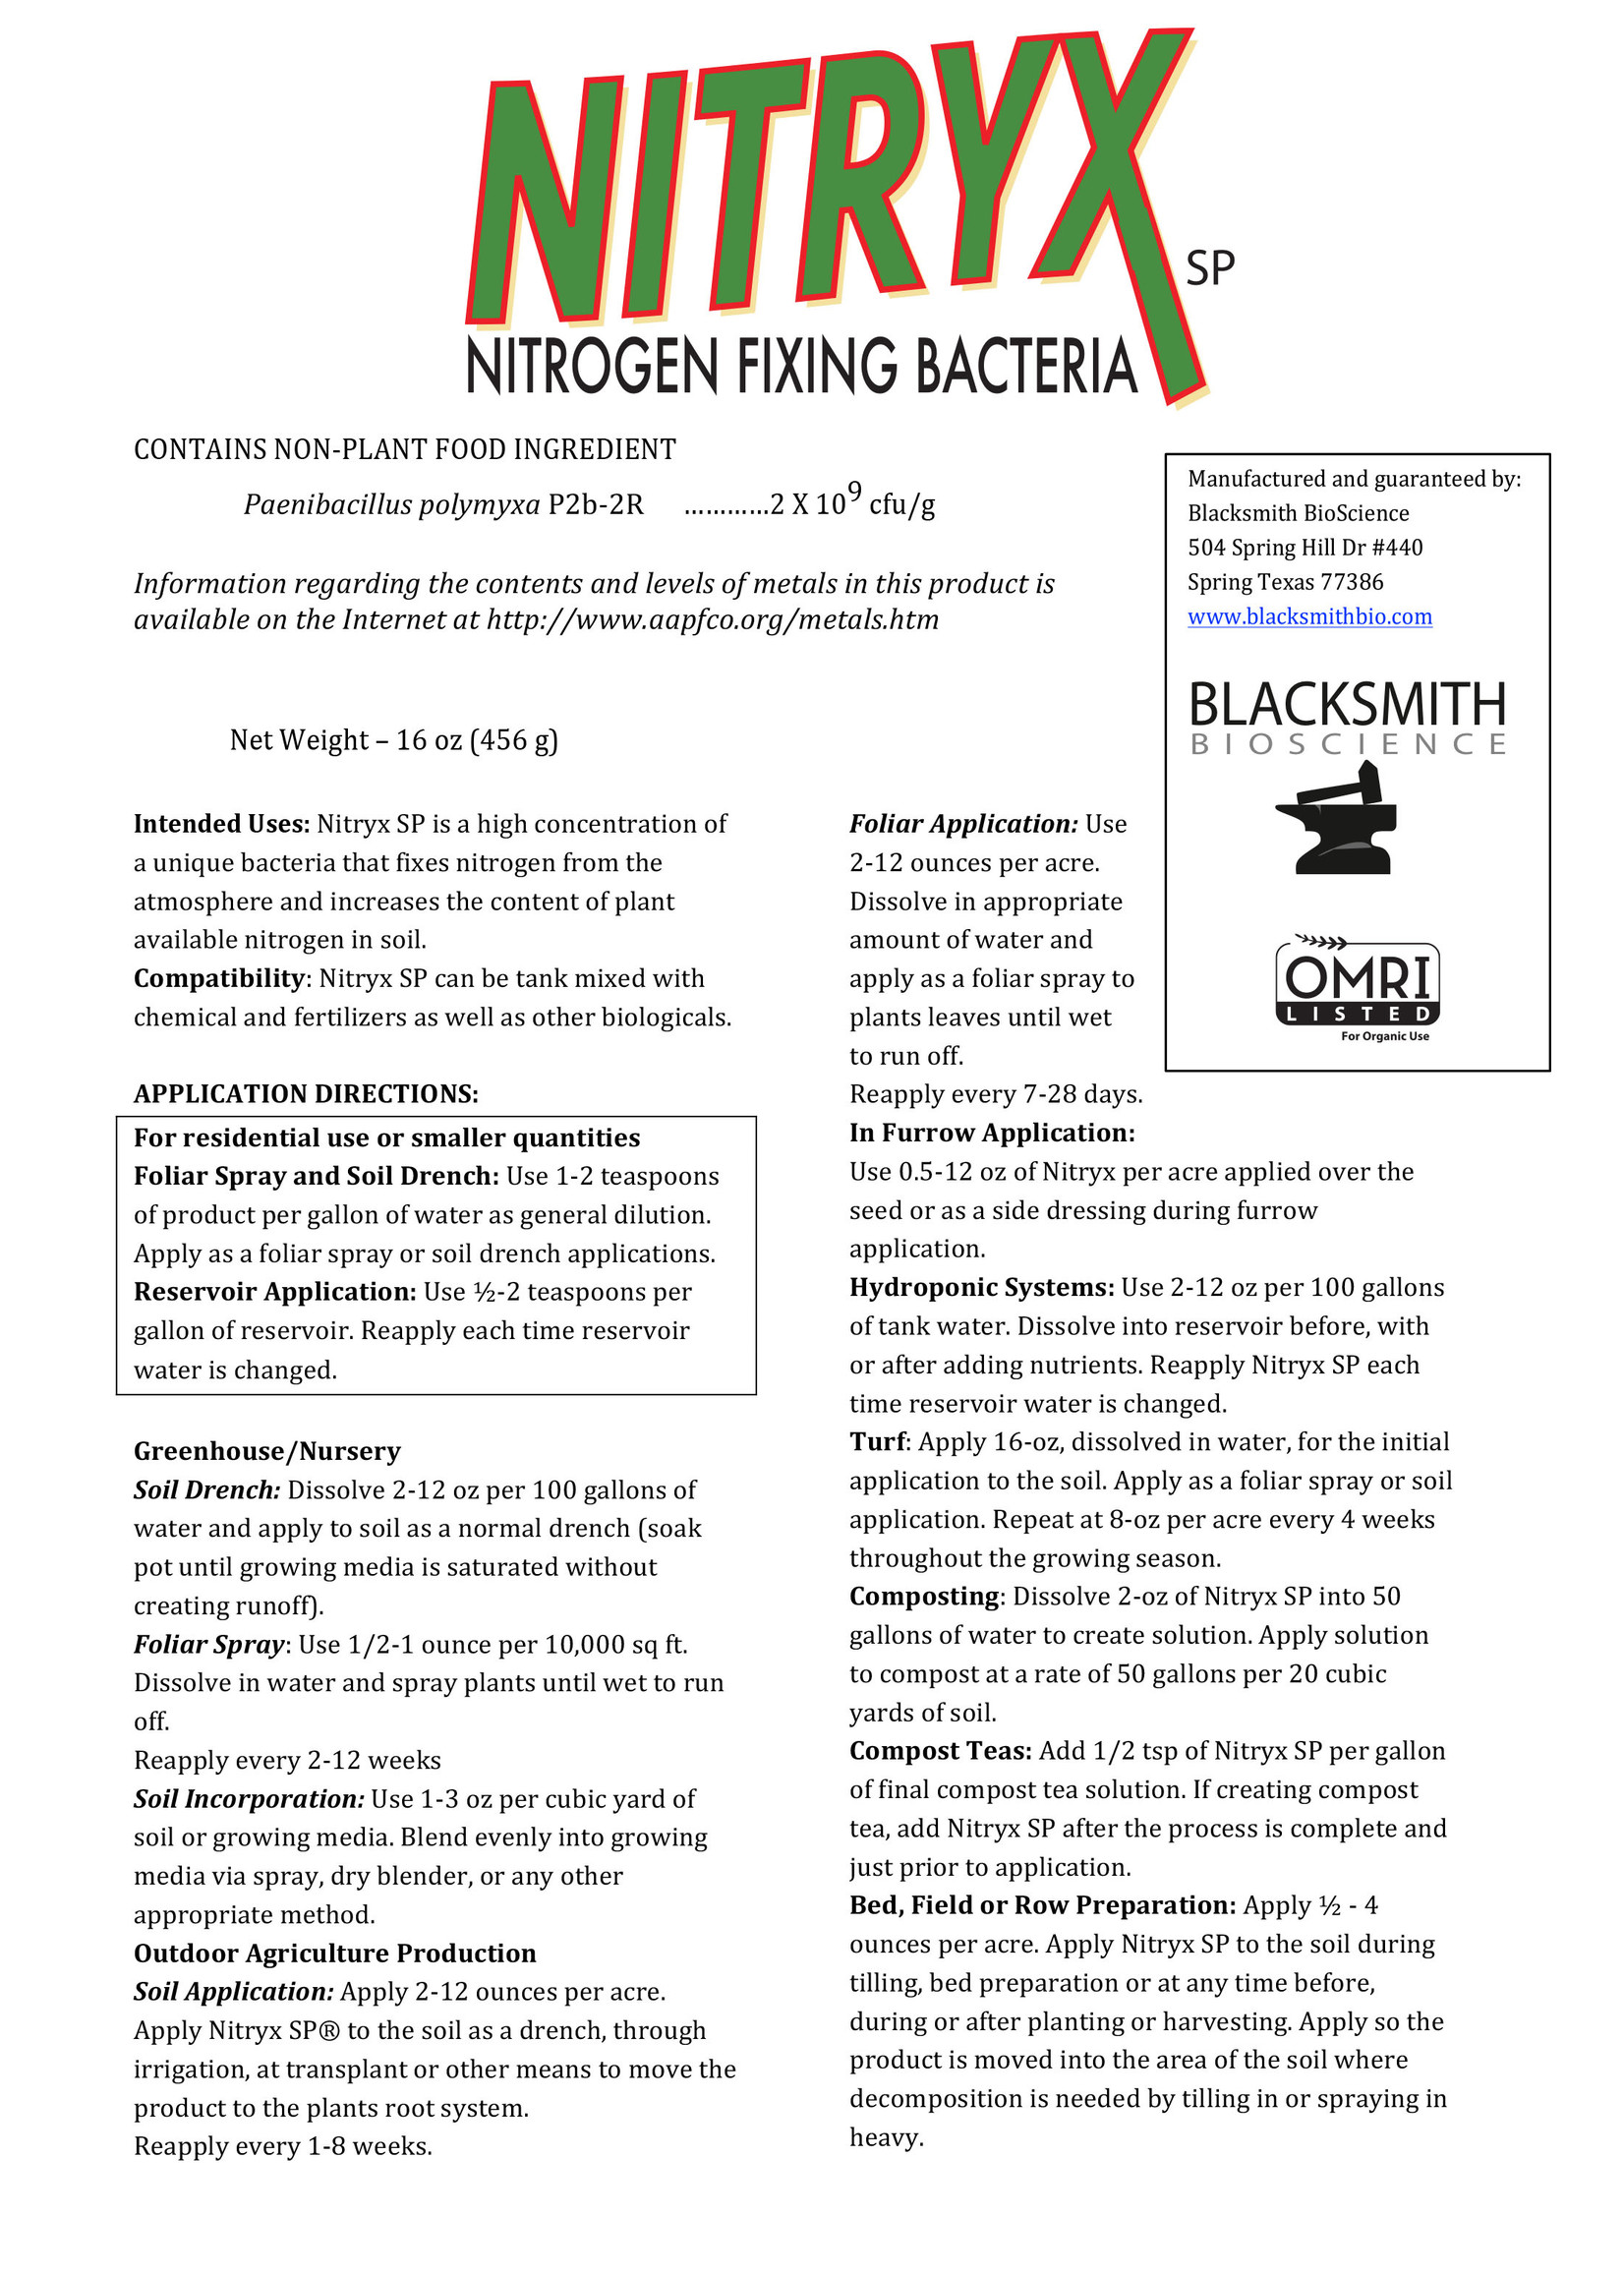 Blacksmith Bioscience Nitryx SP